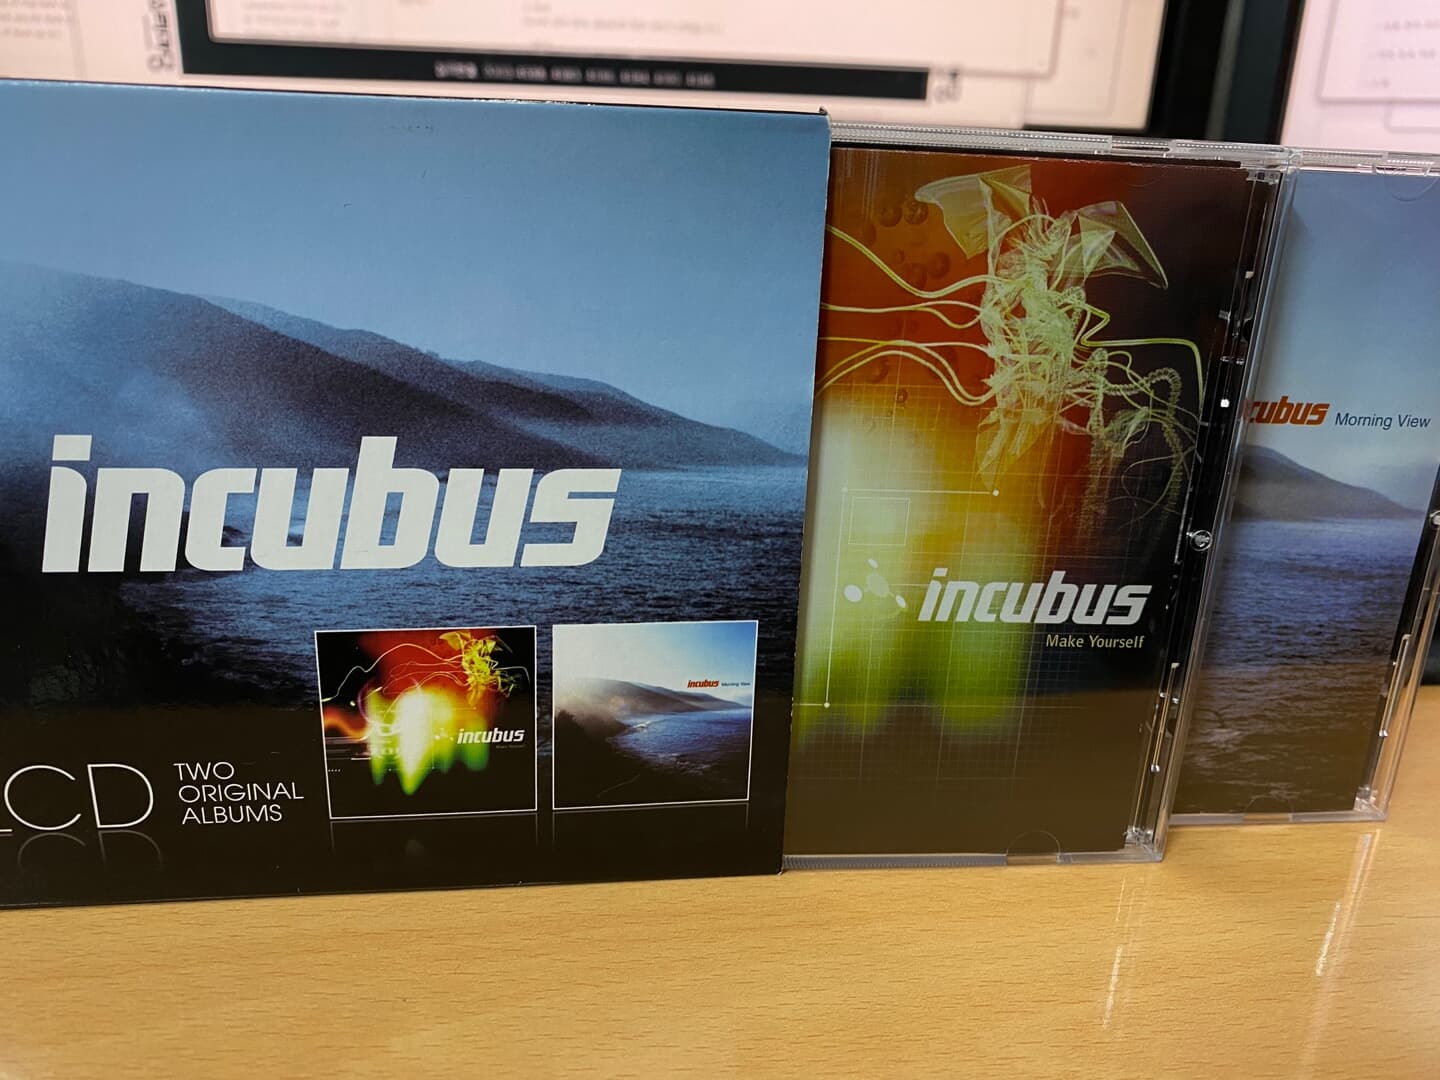 인큐버스 - Incubus - Make Yourself,Morning VIew 합본CD 2Cds [E.U발매]